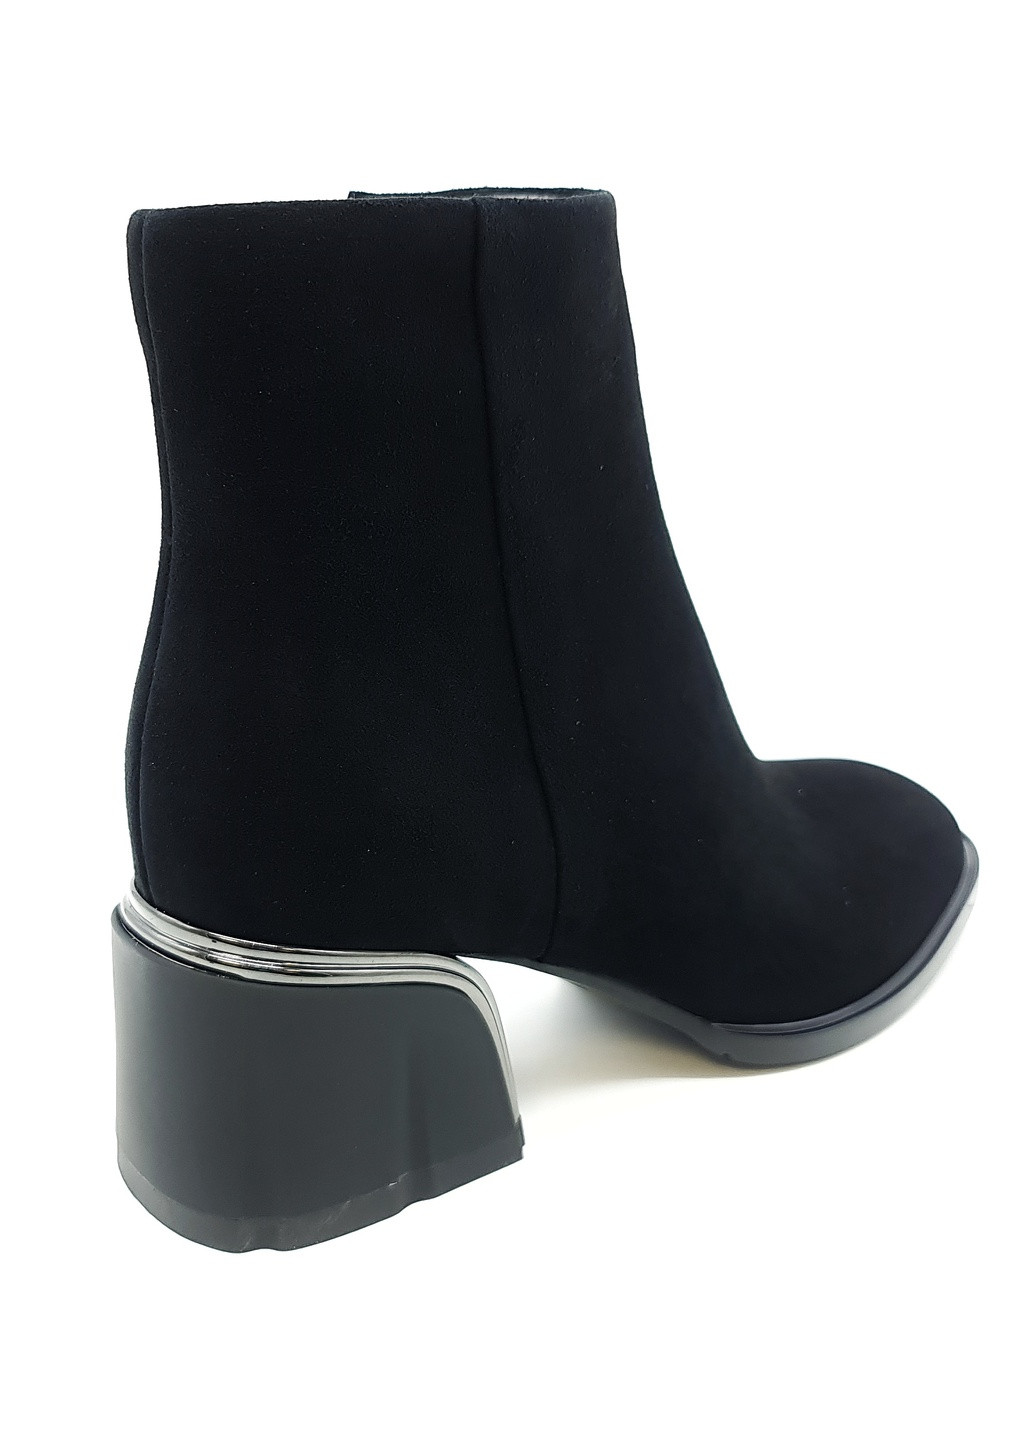 Осенние женские ботинки черные замшевые bv-18-21 23,5 см (р) Boss Victori